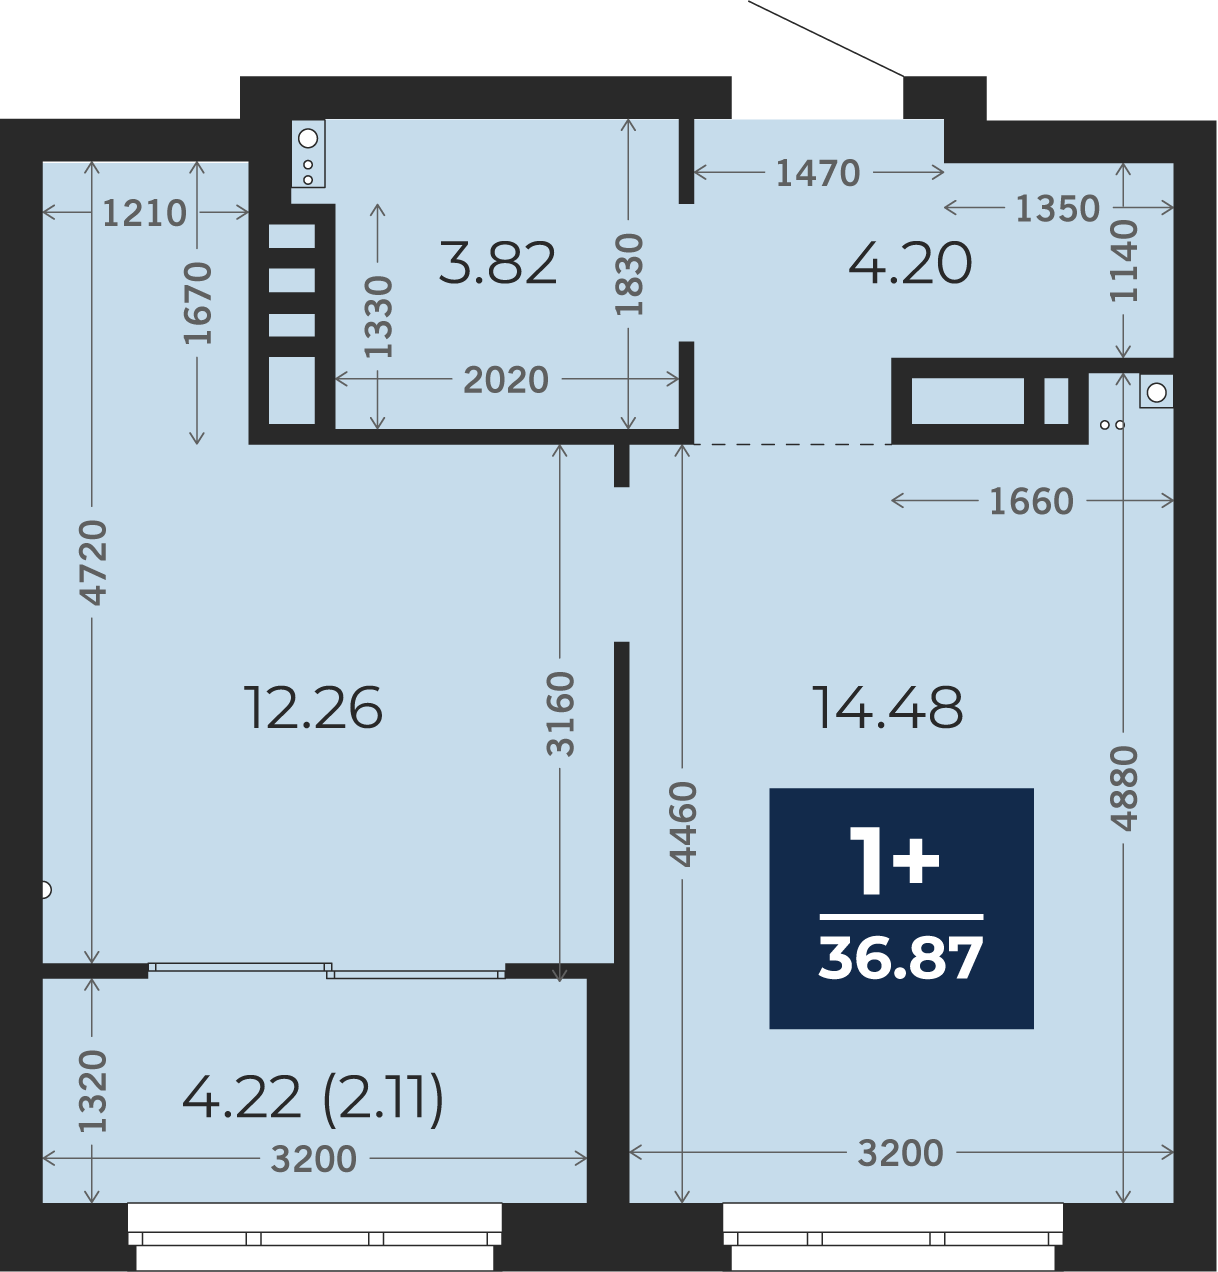 Квартира № 219, 1-комнатная, 36.87 кв. м, 3 этаж